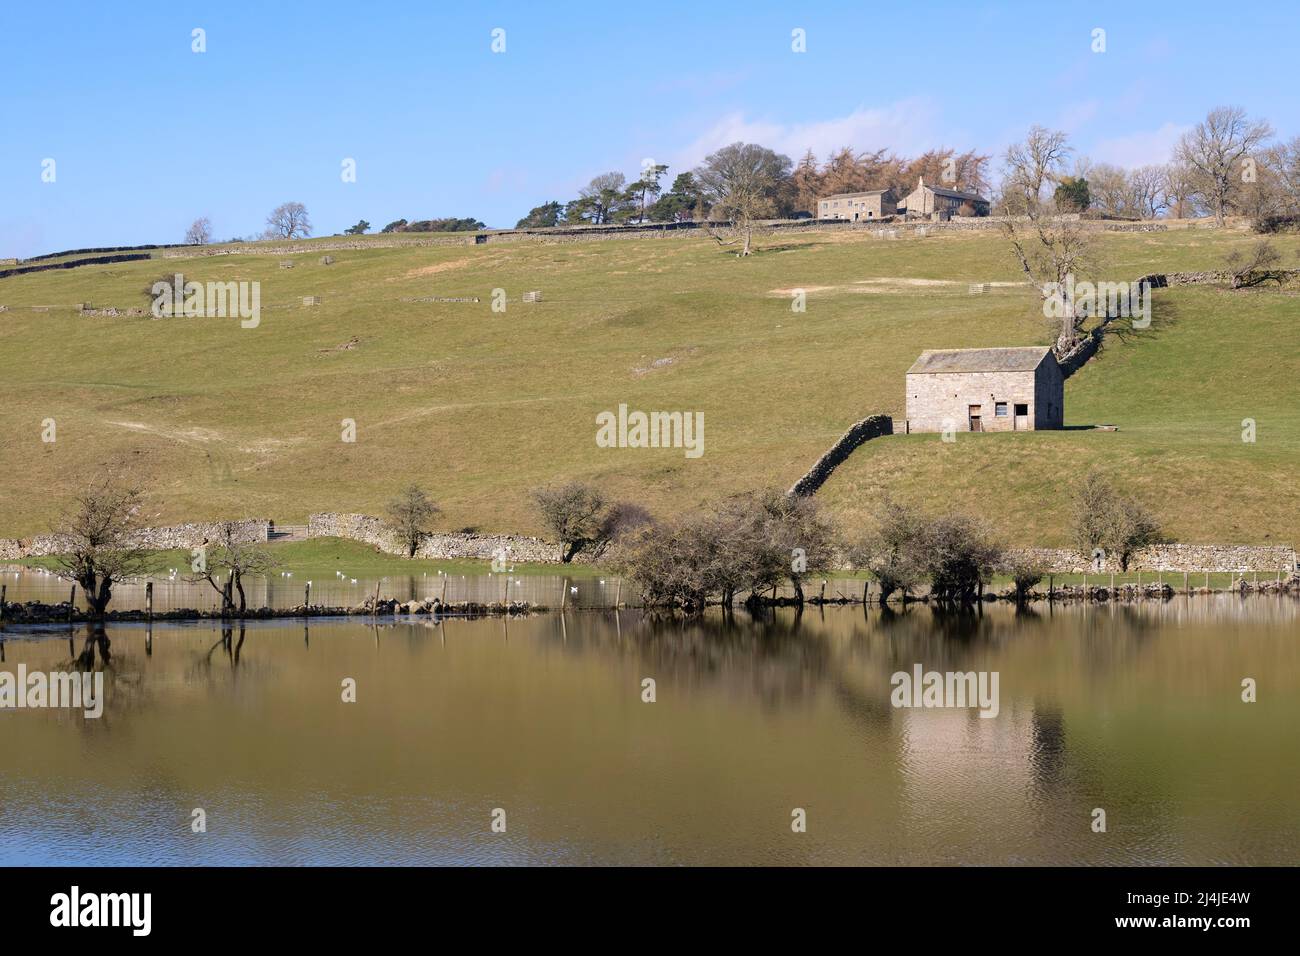 Champs inondés près de Reeth à Swaledale, dans le parc national de Yorkshire Dales. La grange emblématique en pierre et les murs en pierre sèche se reflètent dans l'eau fixe. Banque D'Images